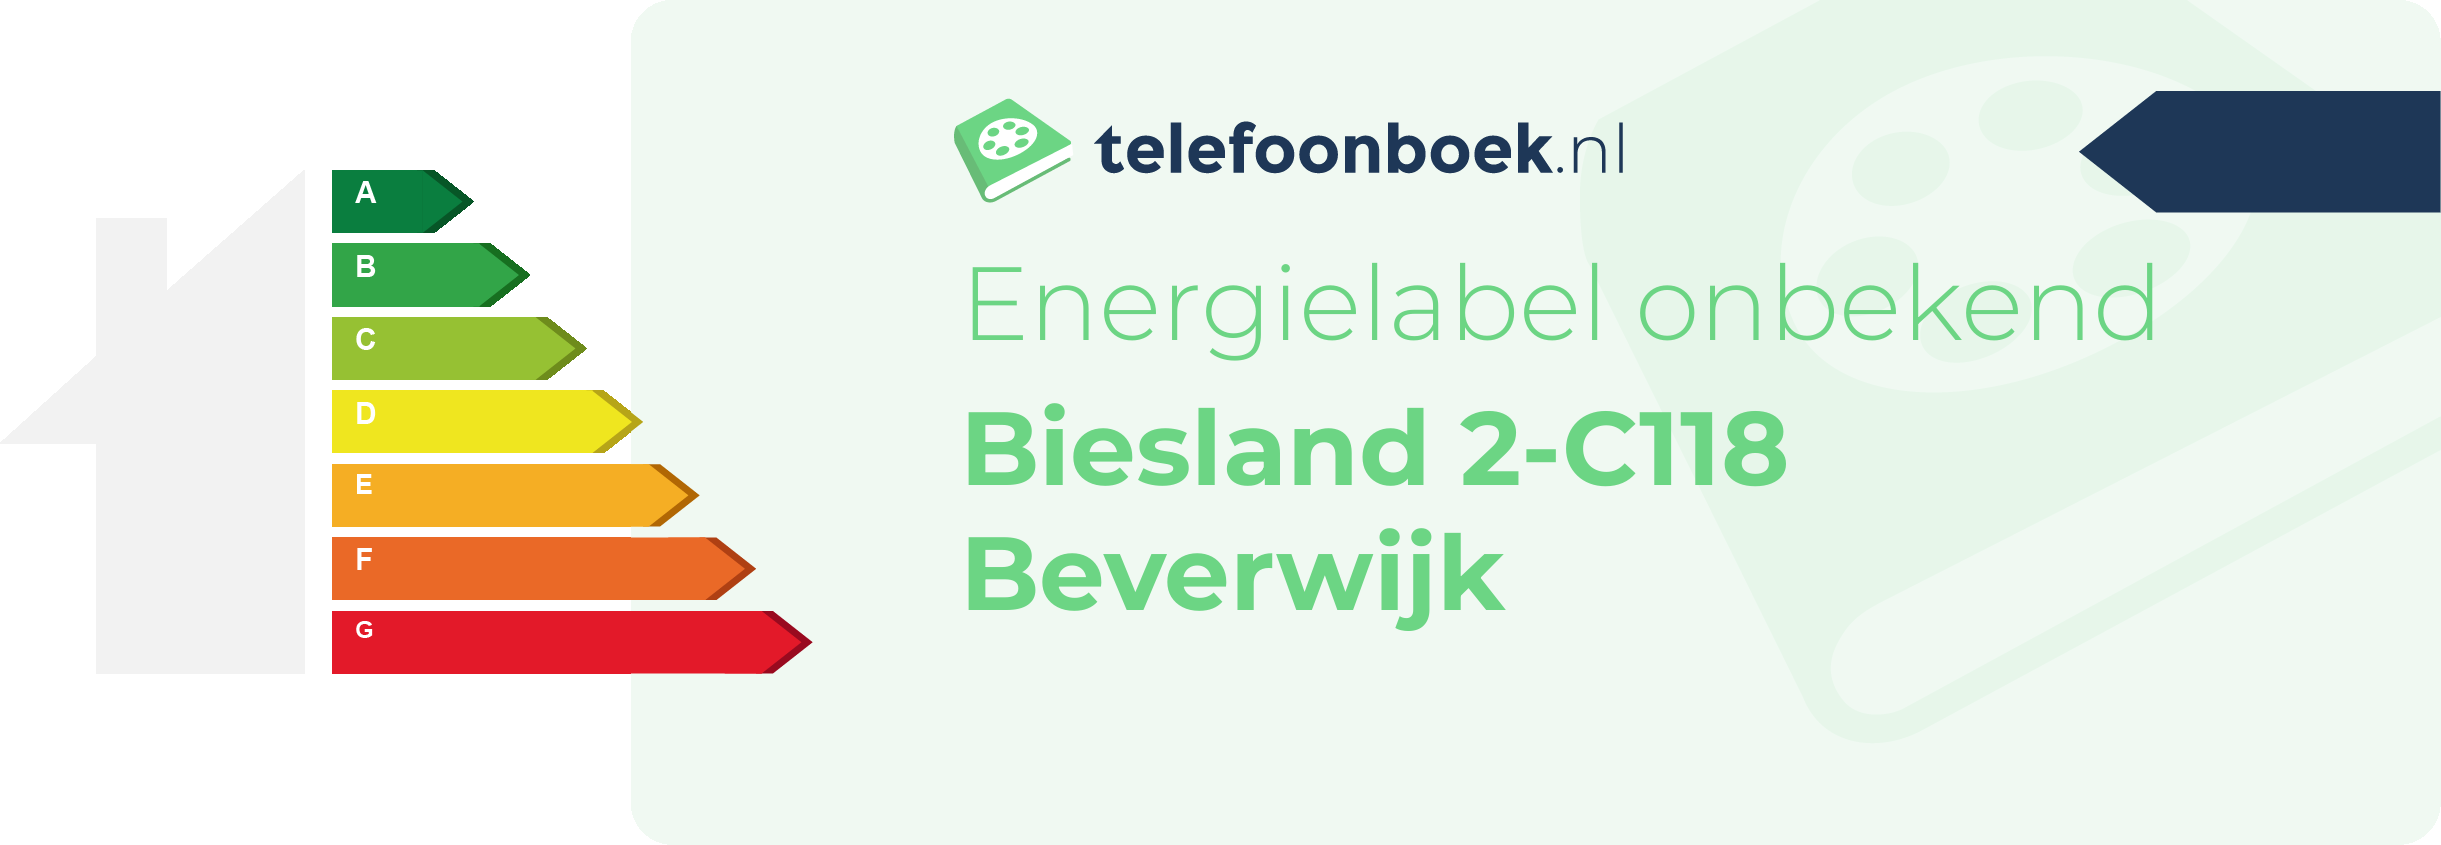 Energielabel Biesland 2-C118 Beverwijk